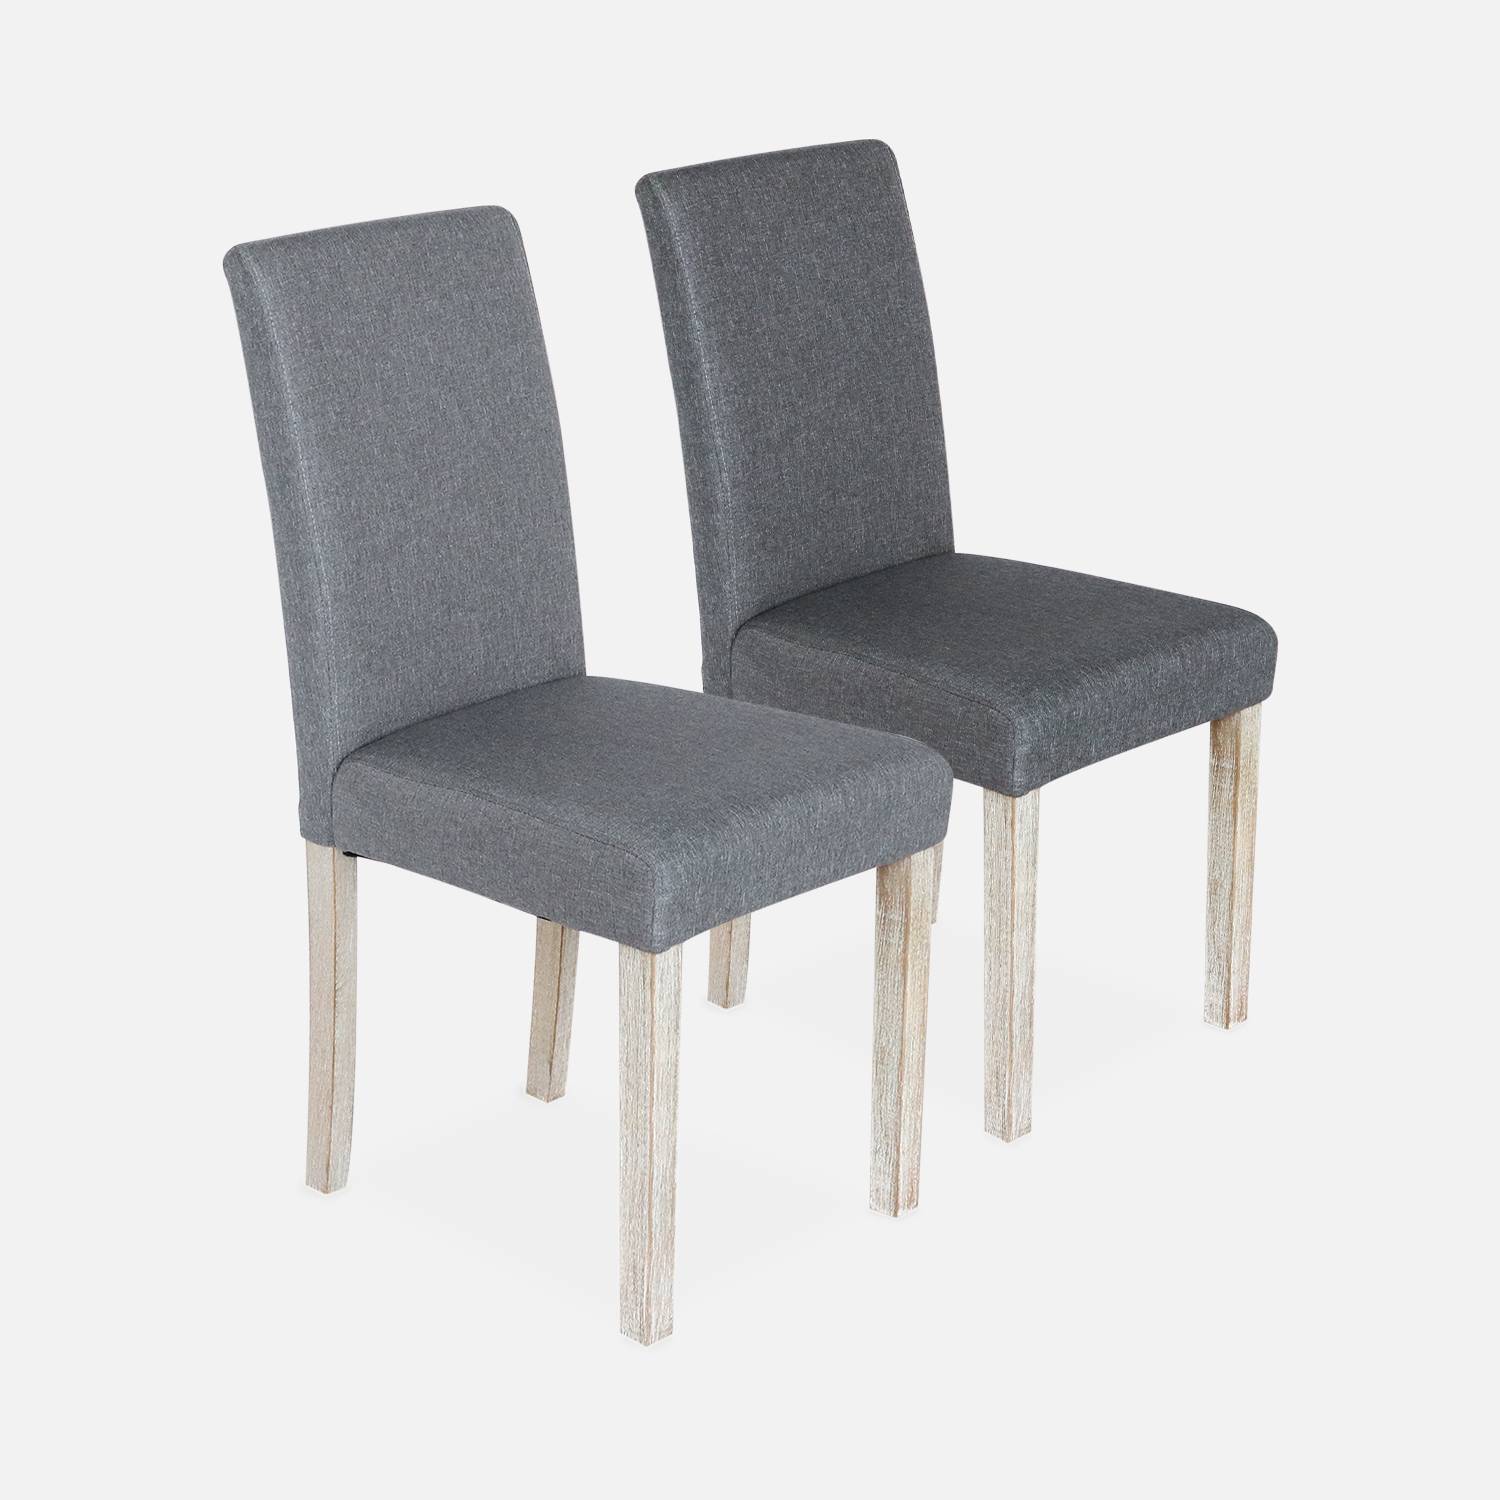 Set di 2 sedie - Rita - sedie in tessuto, gambe in legno Photo6